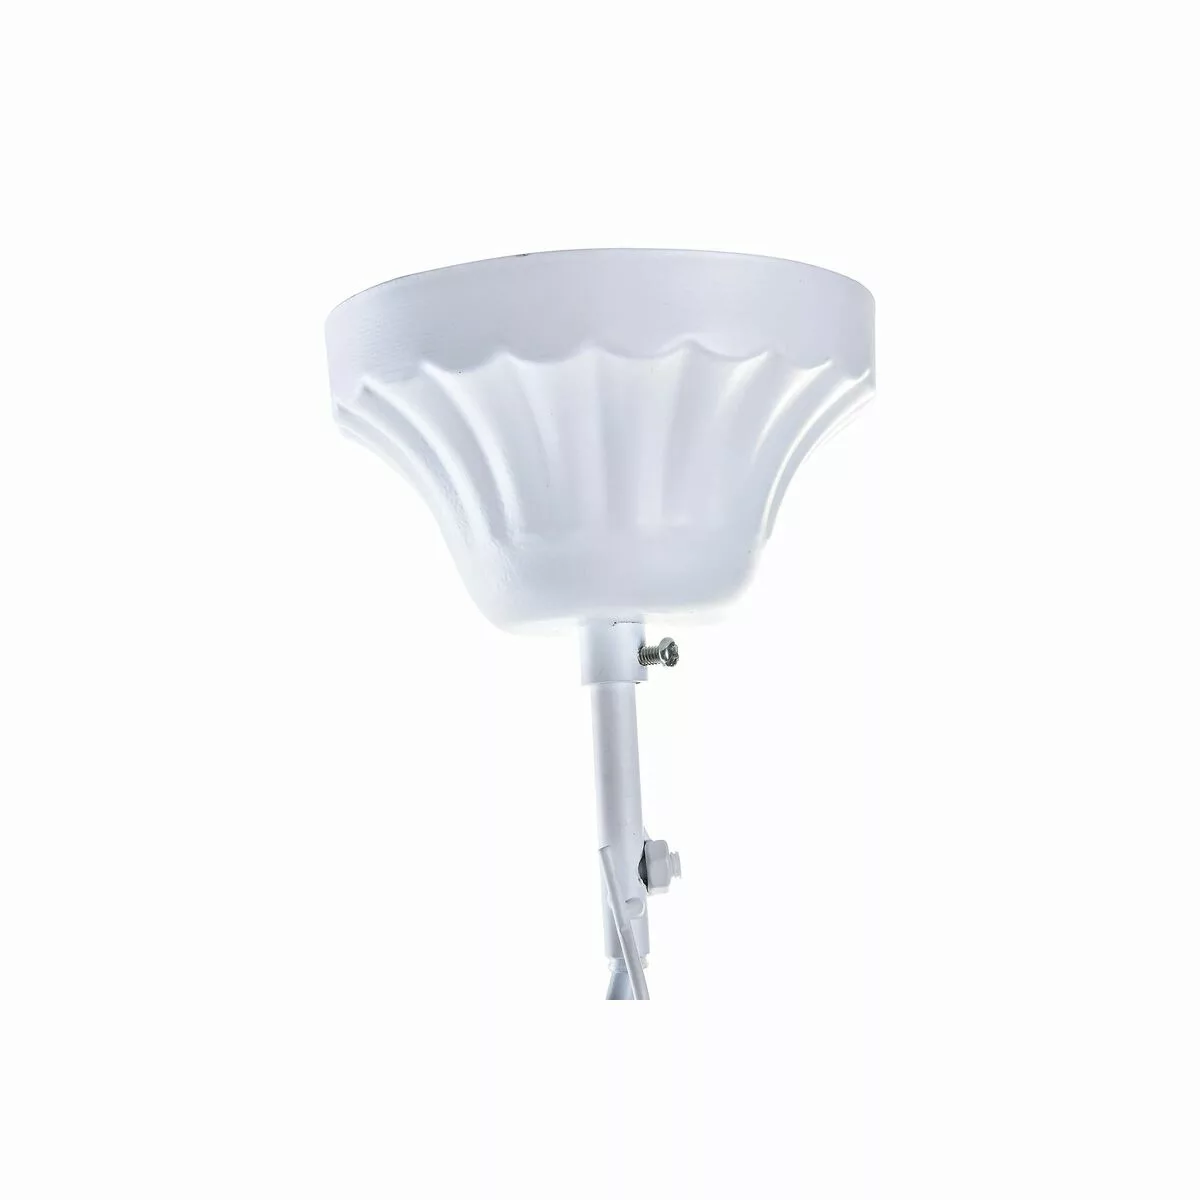 Deckenlampe Dkd Home Decor 25w Rosa Weiß 220 V (49 X 47 X 37 Cm) günstig online kaufen